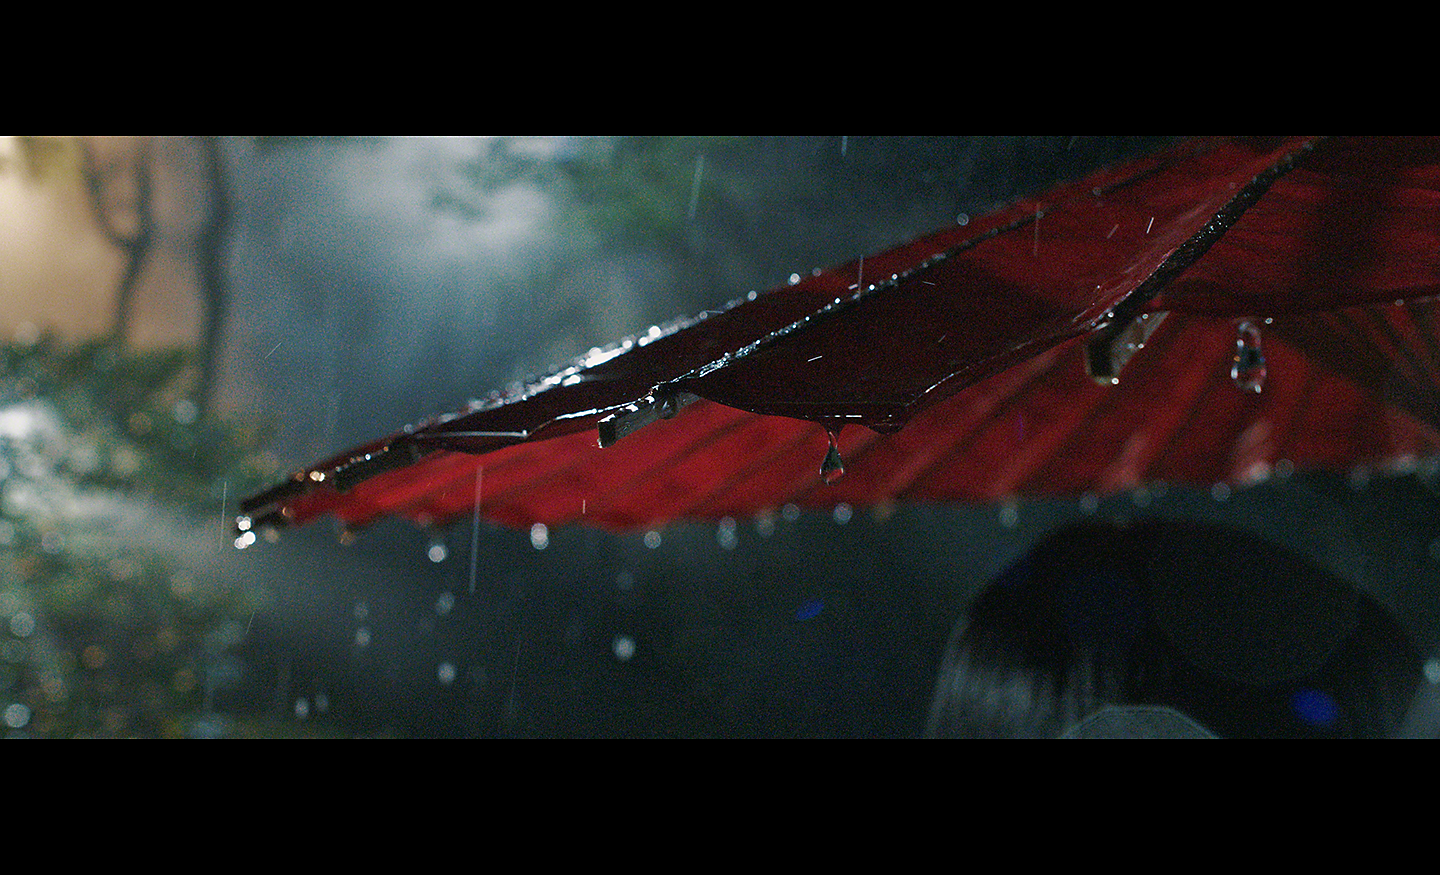 雨滴從紅色陽傘滴落的低光影像